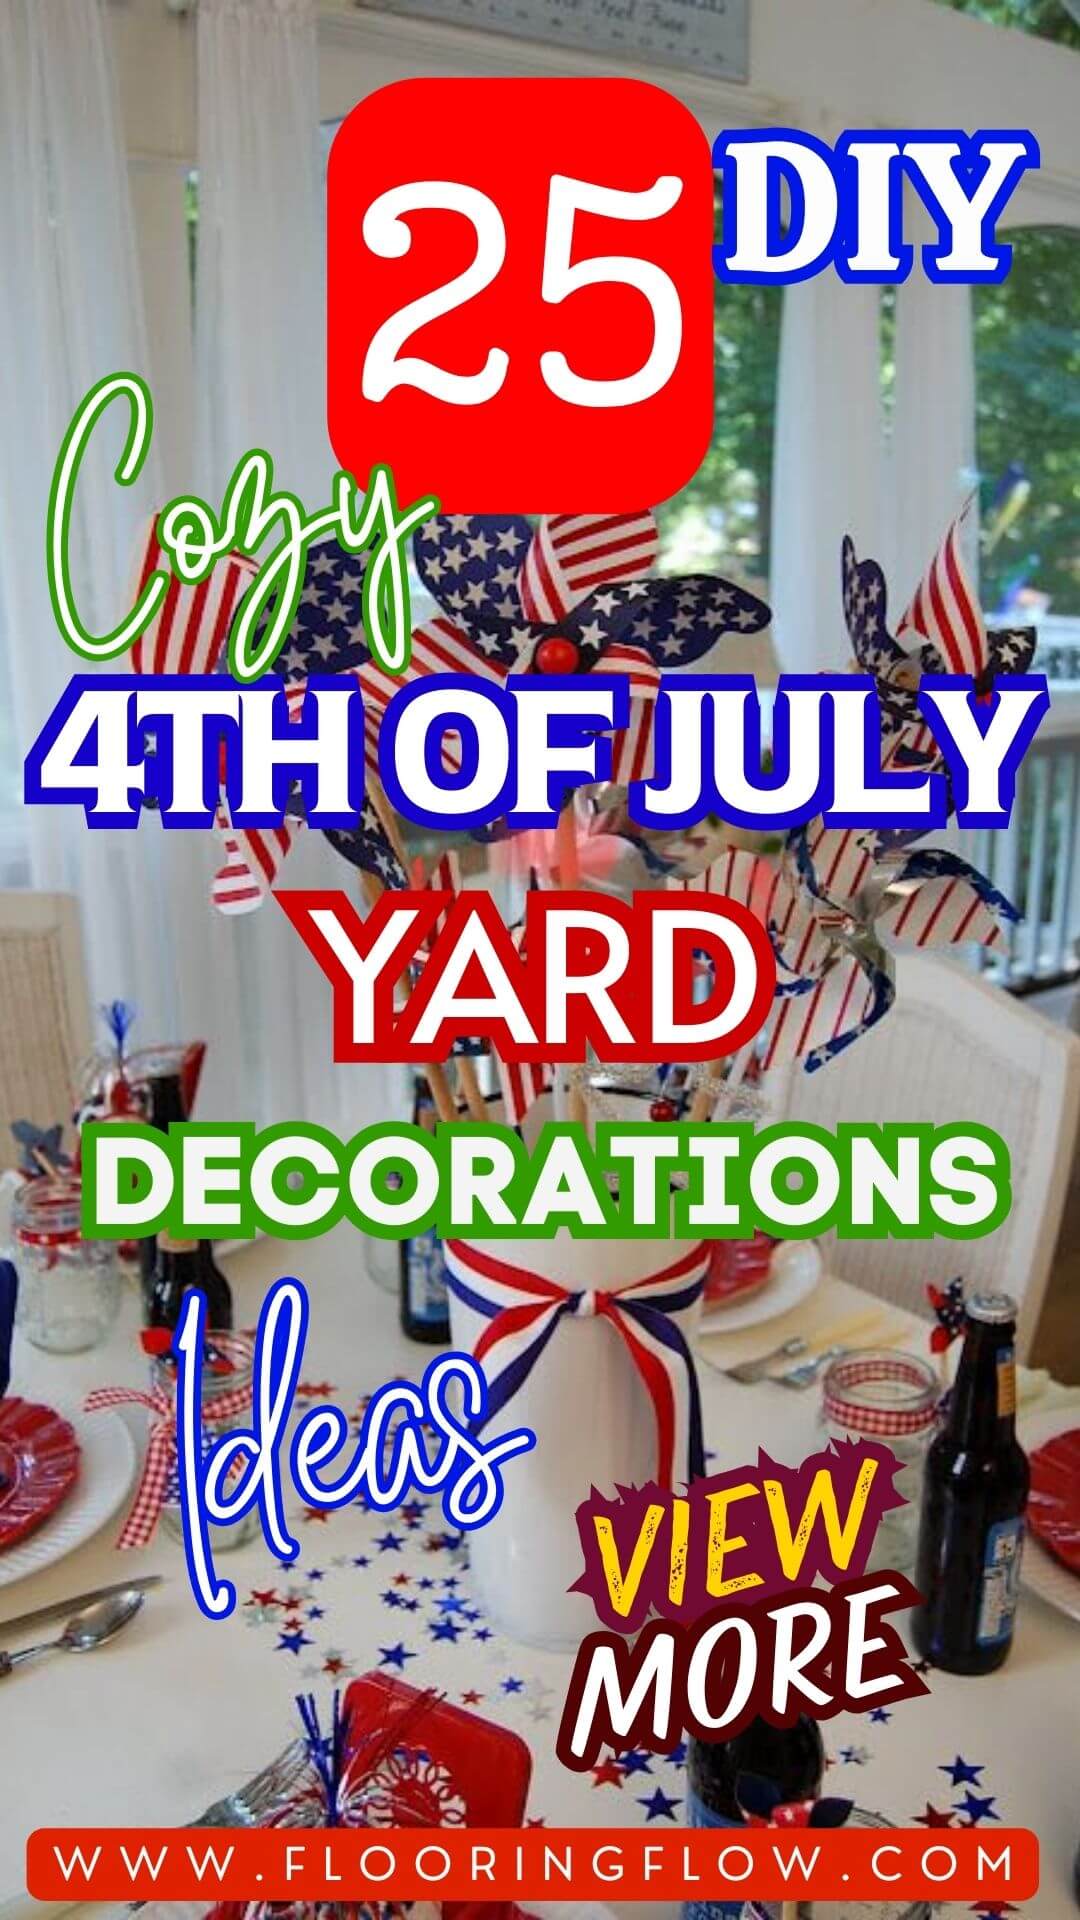 Cozy DIY 4th of July Yard Decorations